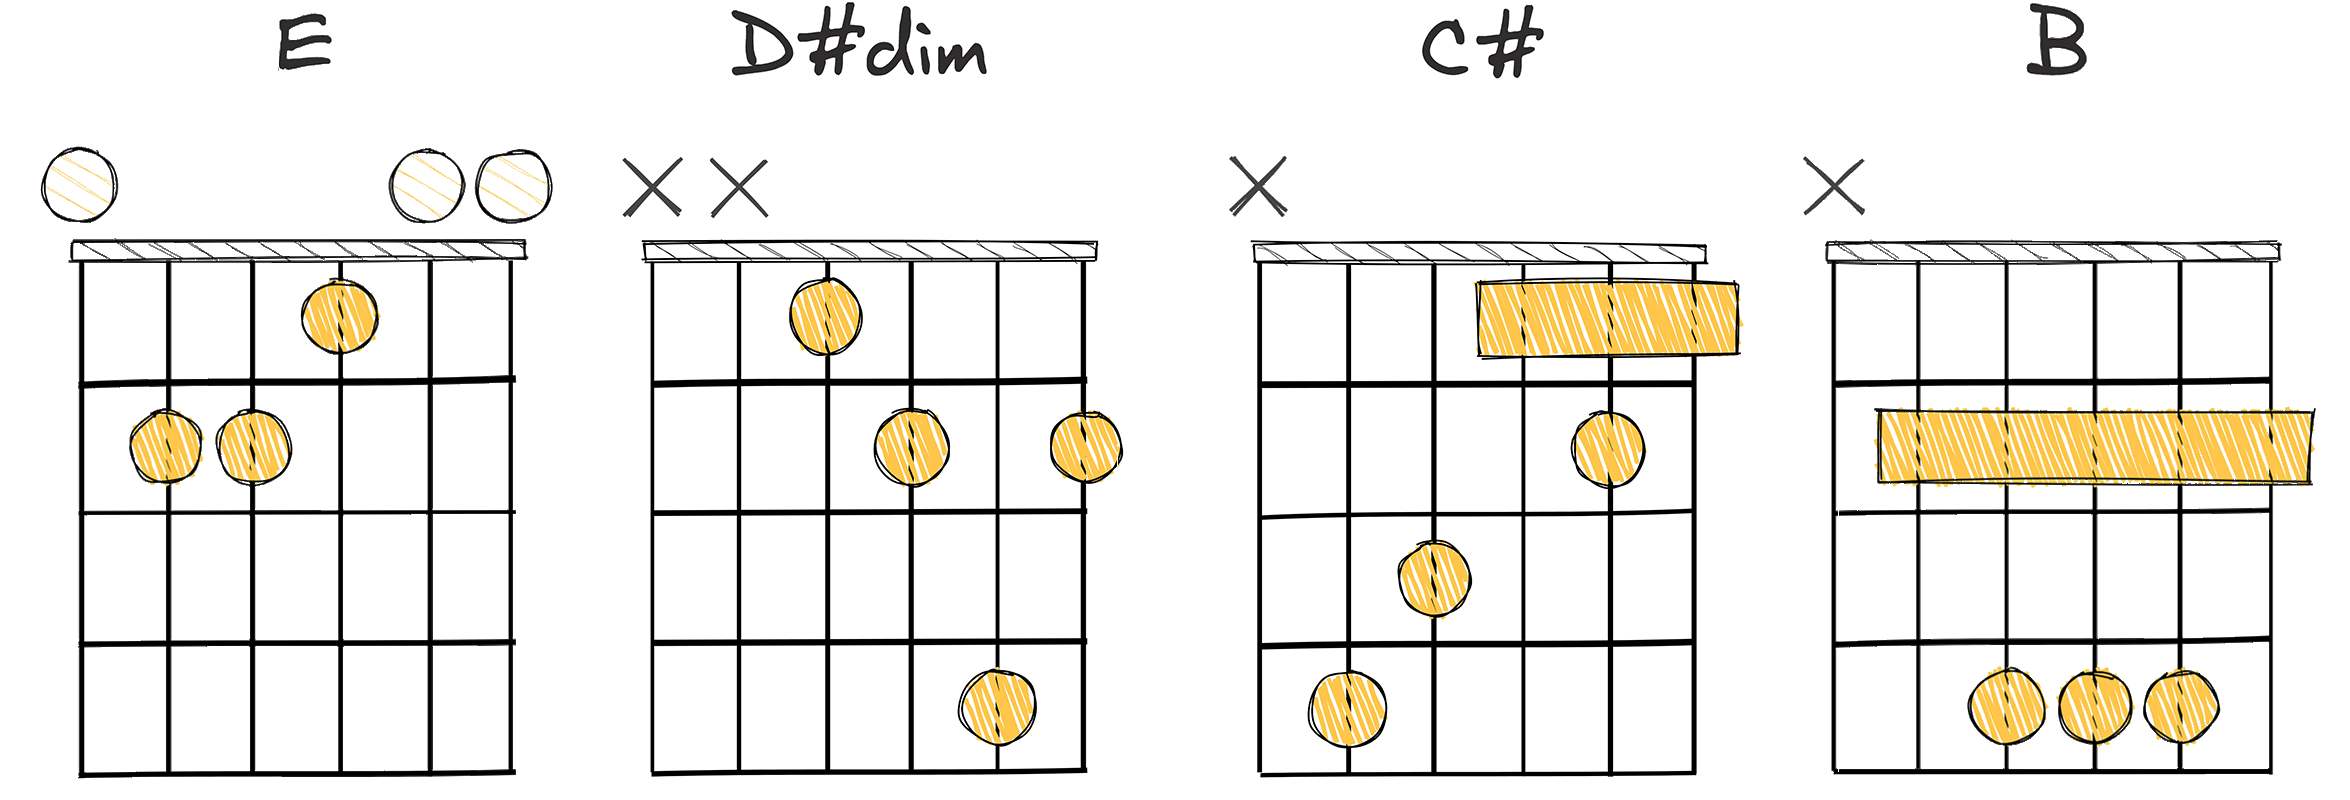 I-vii°-vi-V chords diagram